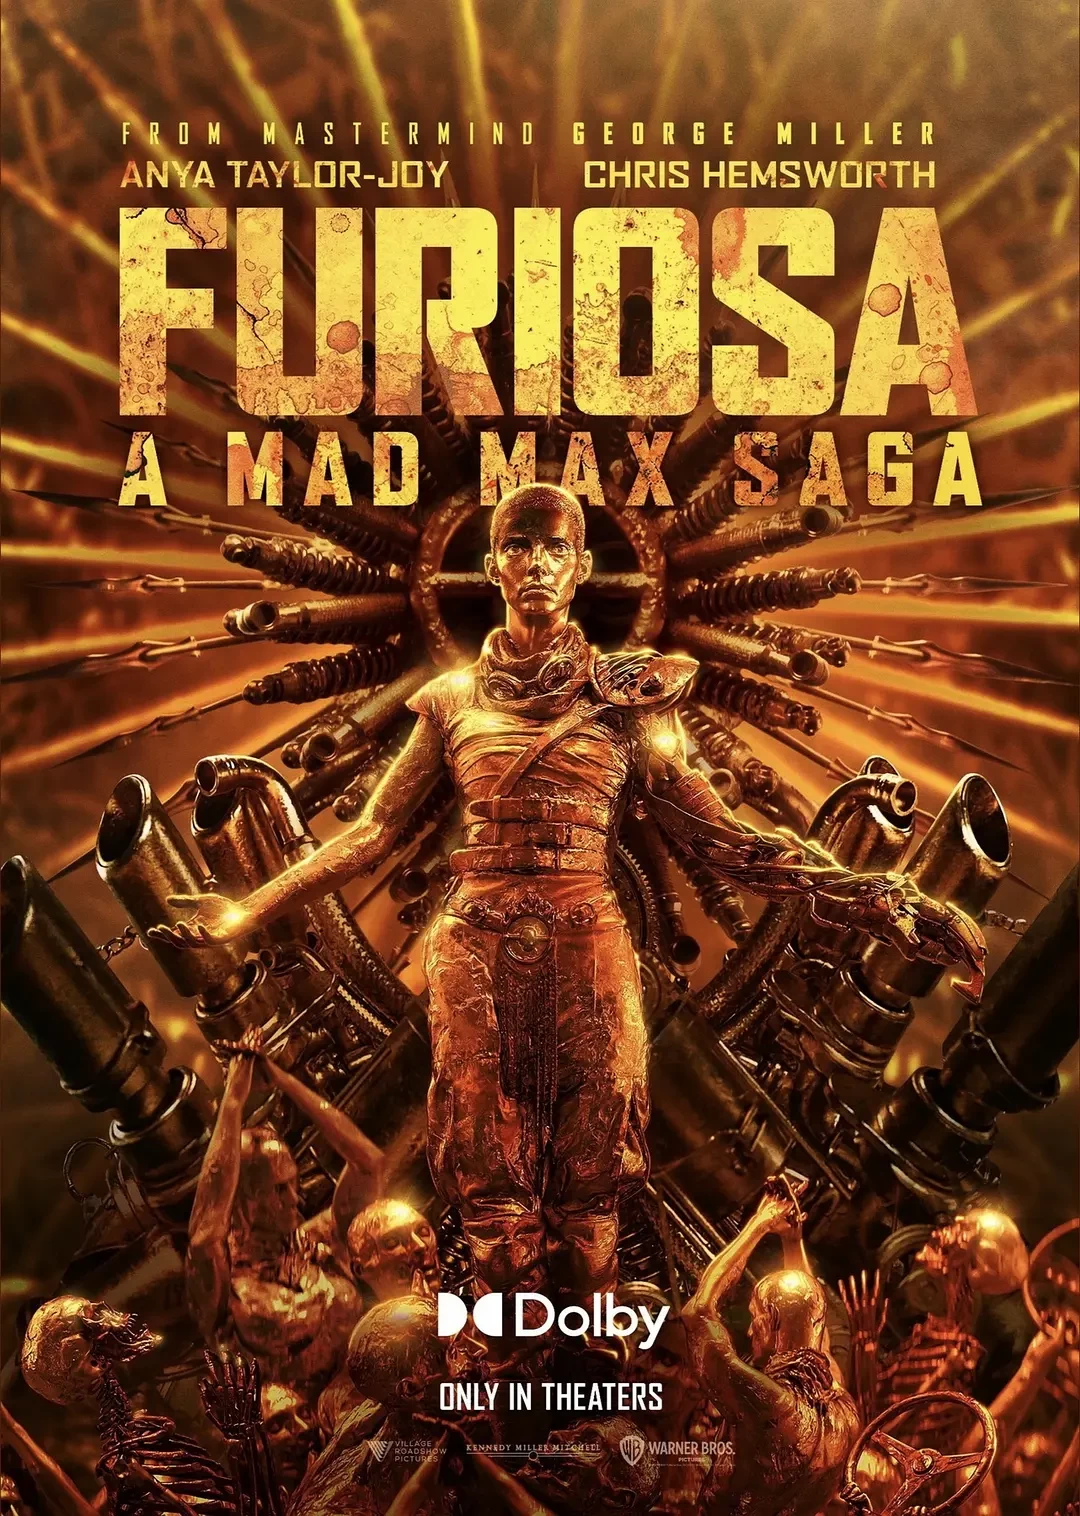 疯狂的麦克斯：狂暴女神 WEB-DL版下载/疯狂的麦克斯：弗瑞奥萨 / 芙莉欧莎：疯狂麦斯传奇篇章(台) / 芙莉欧莎：末日先锋传说(港) / 疯狂的麦克斯前传 / Mad Max: Furiosa / Furiosa 2024 Furiosa: A Mad Max Saga 26.45G